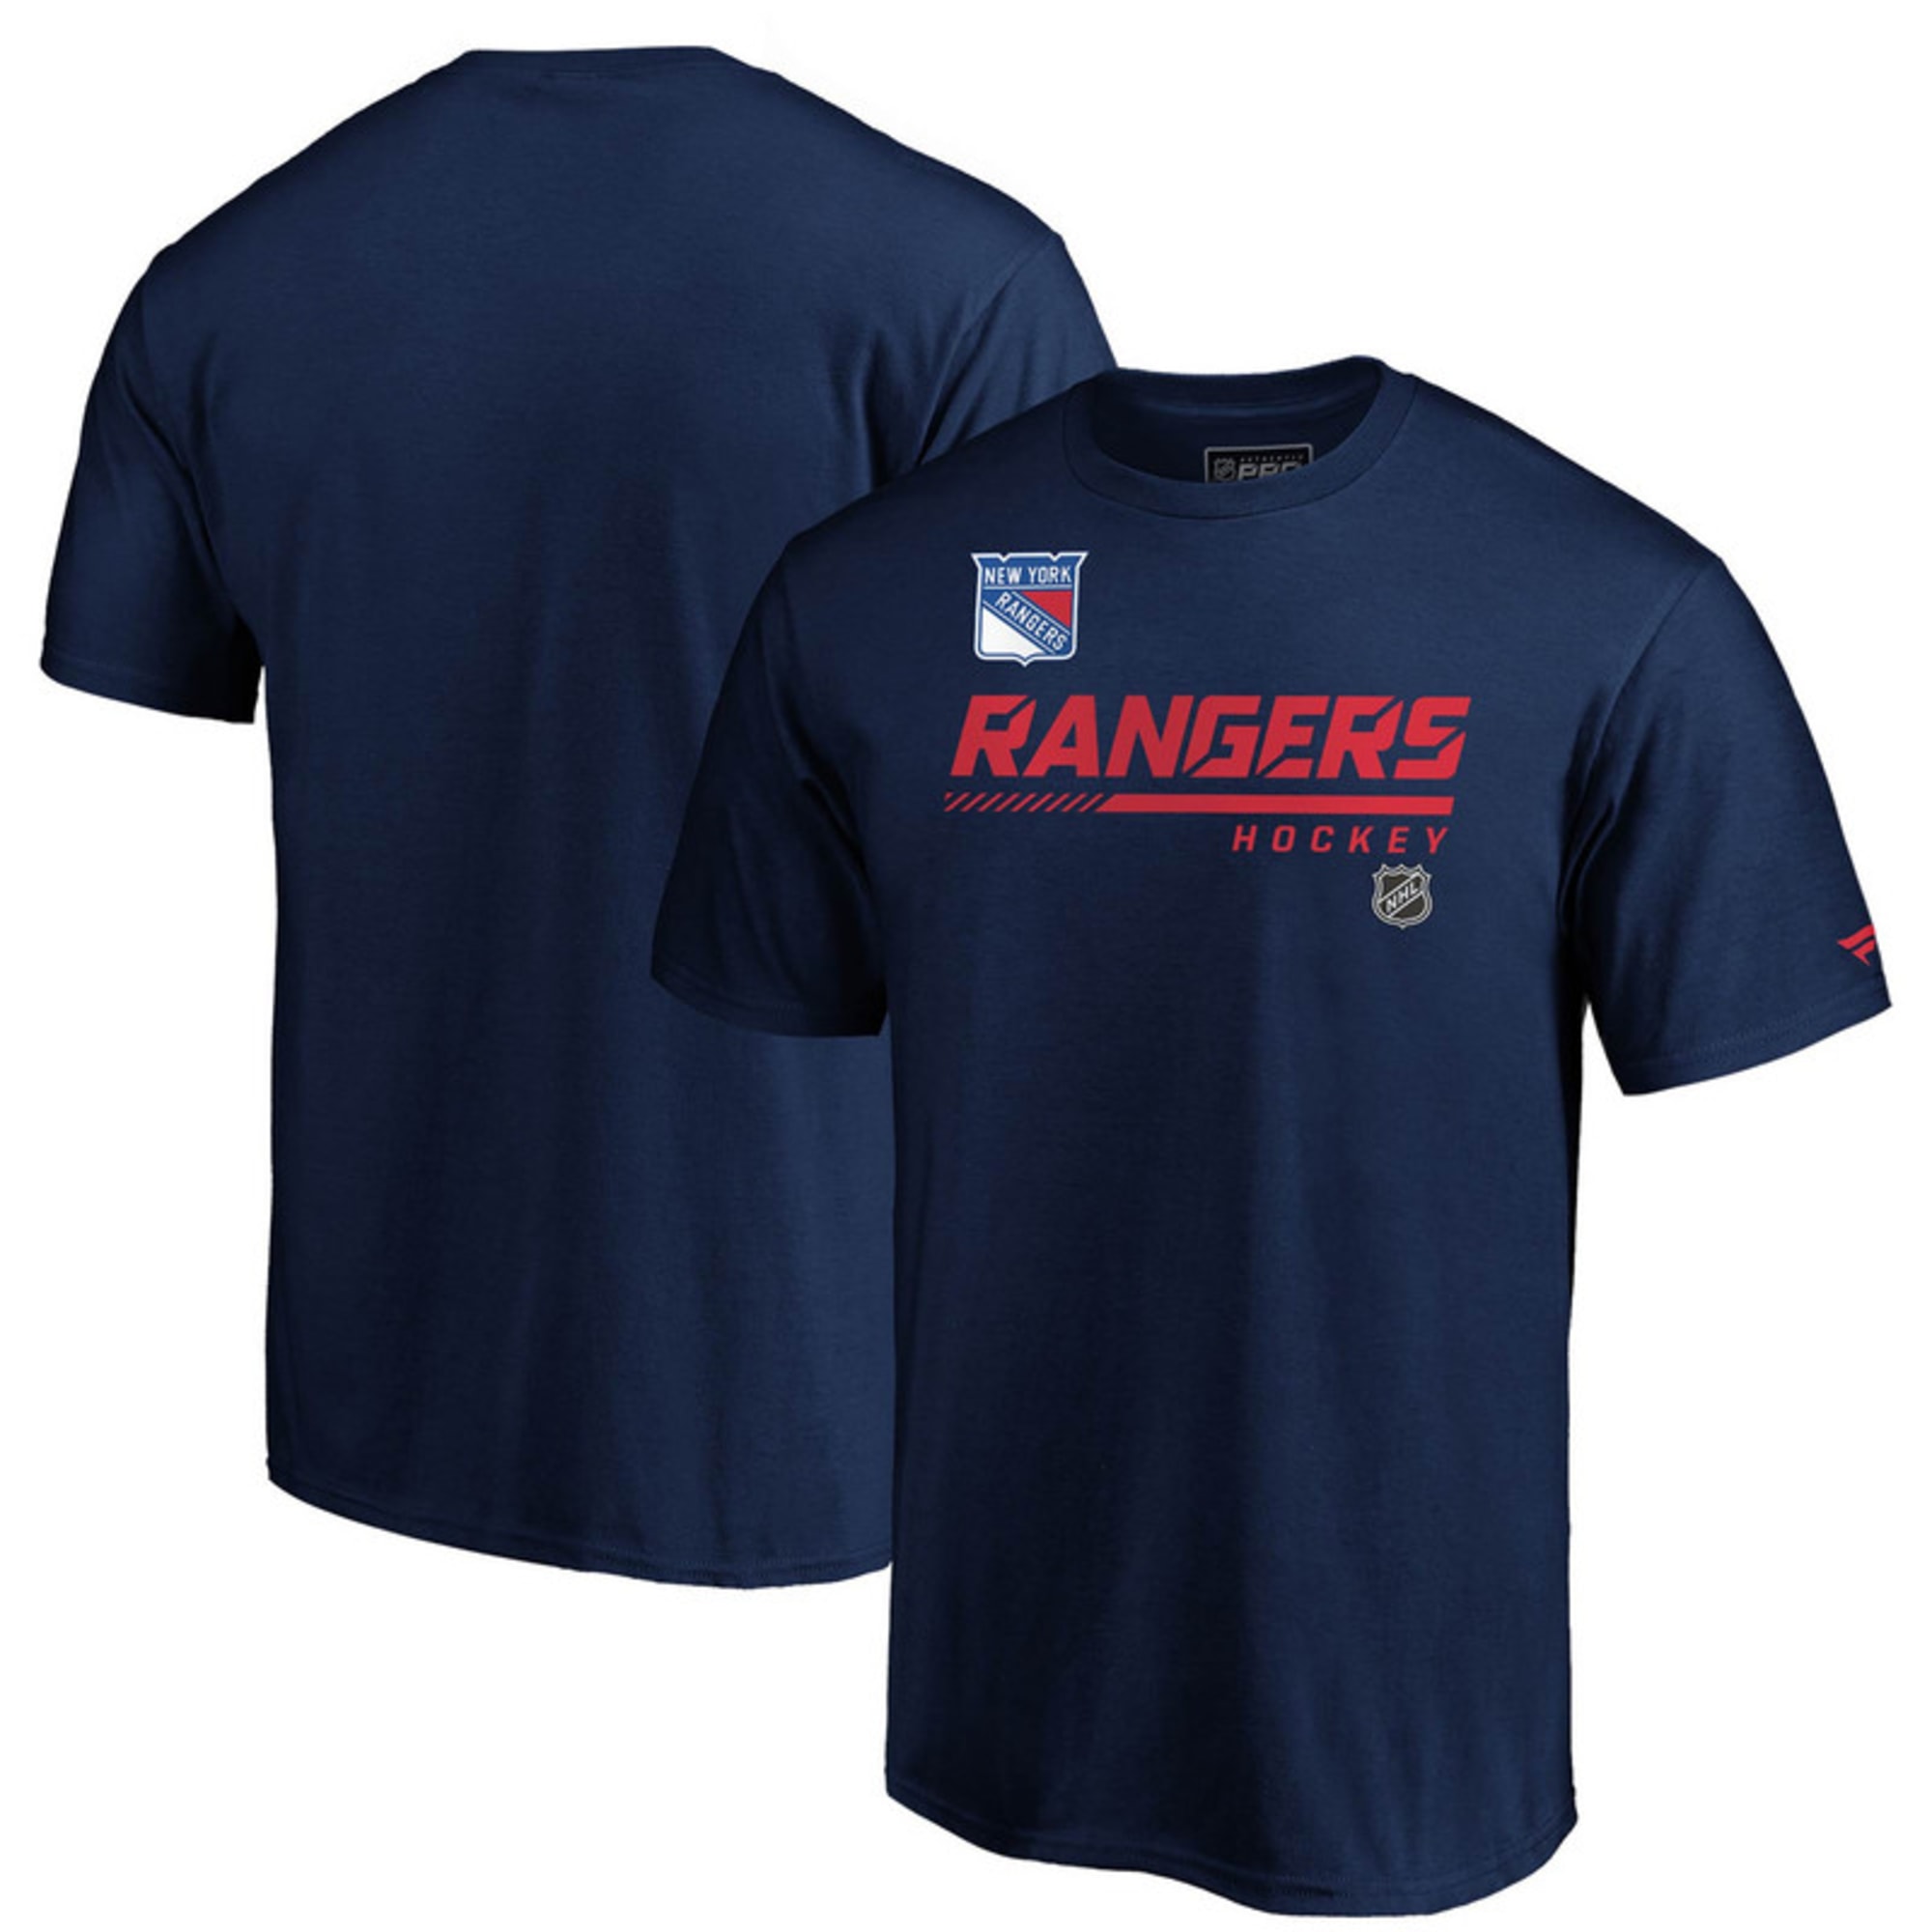 New York Rangers Merchandise, Gifts & Fan Gear - SportsUnlimited.com